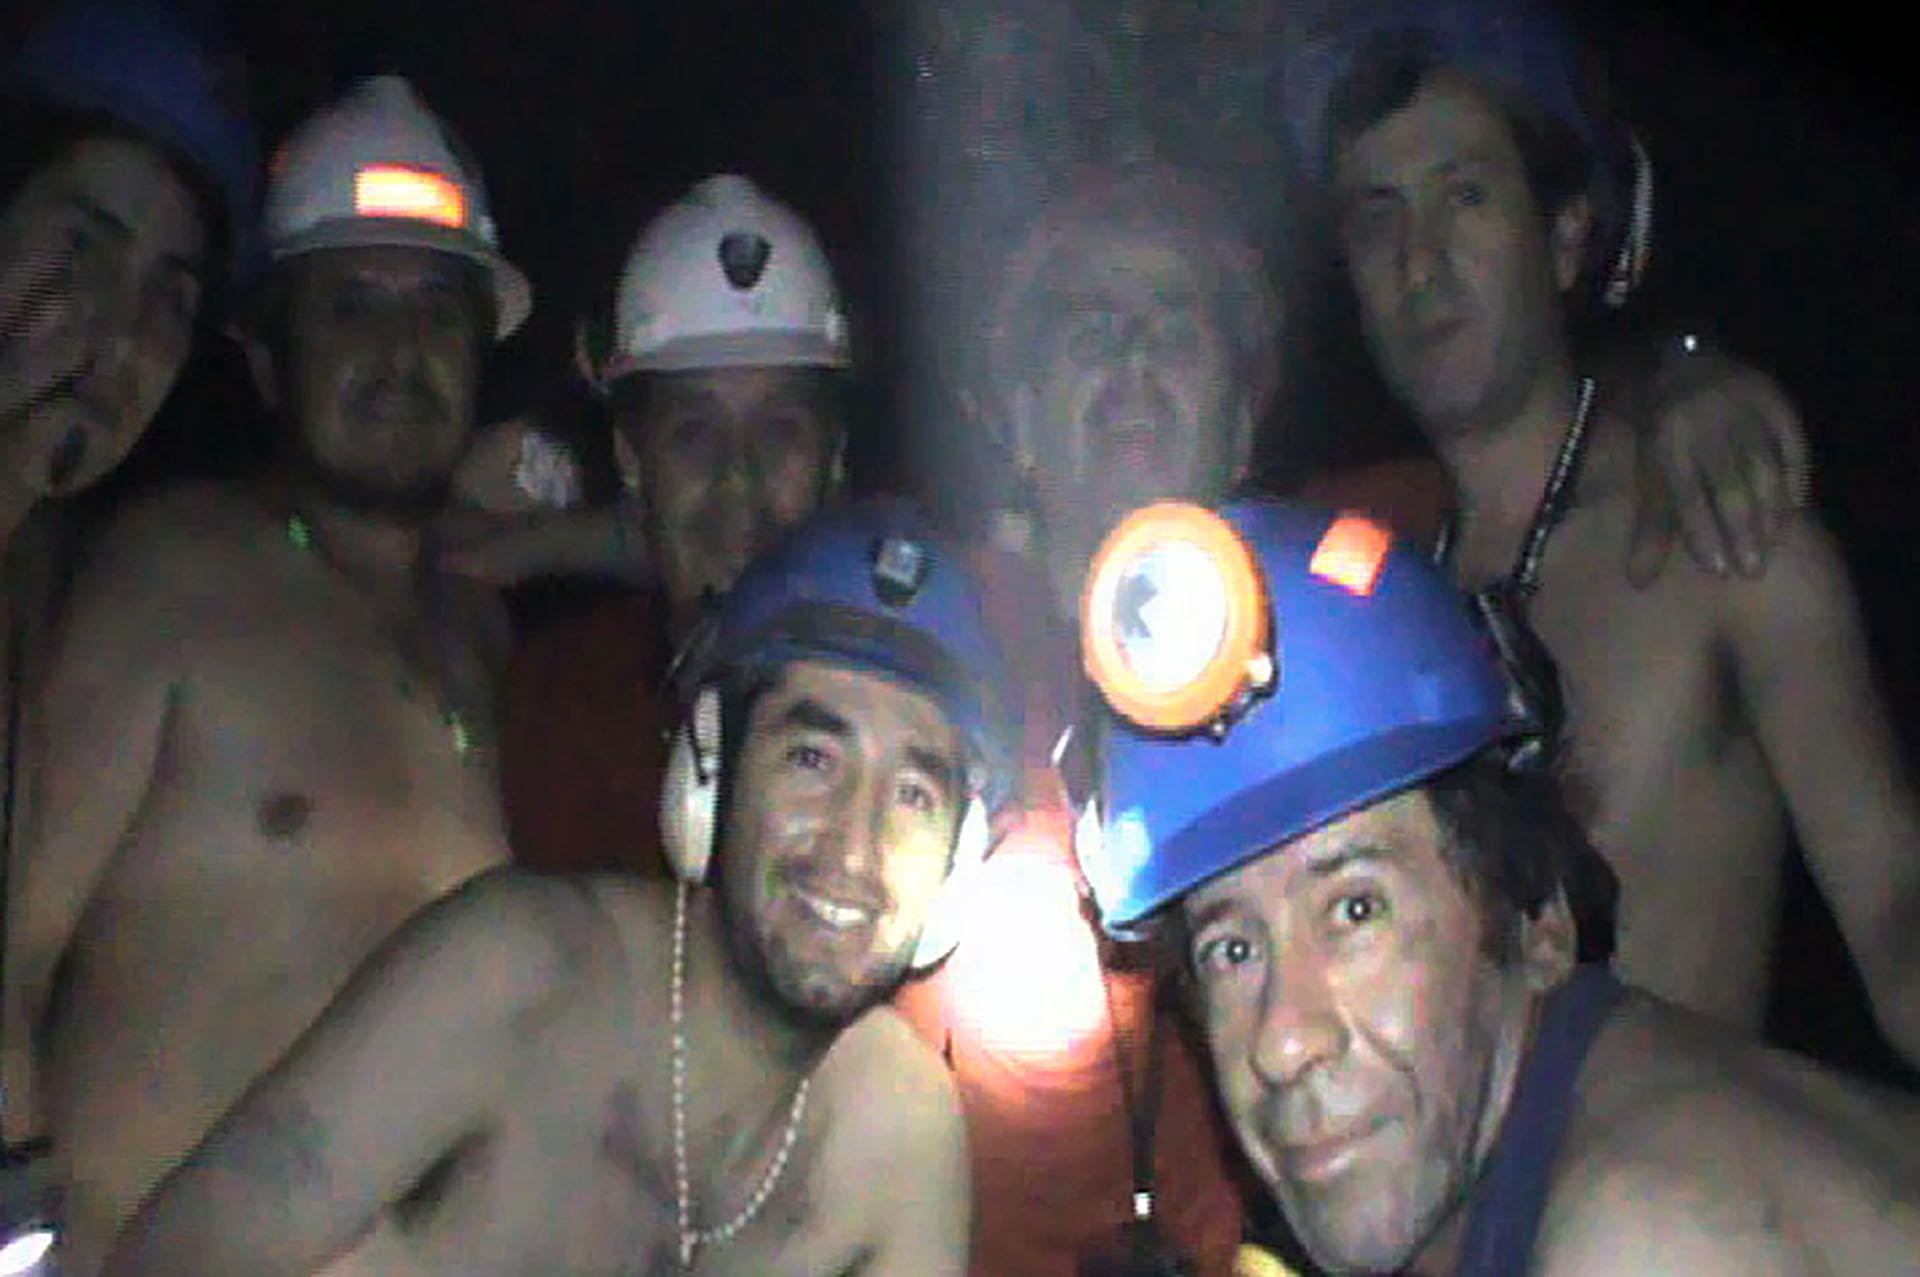 (ARCHIVOS) En esta foto de archivo distribuida por el Ministerio de Minería de Chile y tomada el 17 de septiembre de 2010, mineros chilenos atrapados posan dentro de la mina San José, cerca de Copiapó, 800 km al norte de Santiago, Chile. - Diez años después de quedar atrapados en el fondo de la mina San José, en el norte de Chile, muchos de los llamados "Los 33 mineros de Atacama", se sienten héroes caídos en el olvido y el abandono. (Foto por - / MINISTERIO DE MINERIA DE CHILE / AFP) 